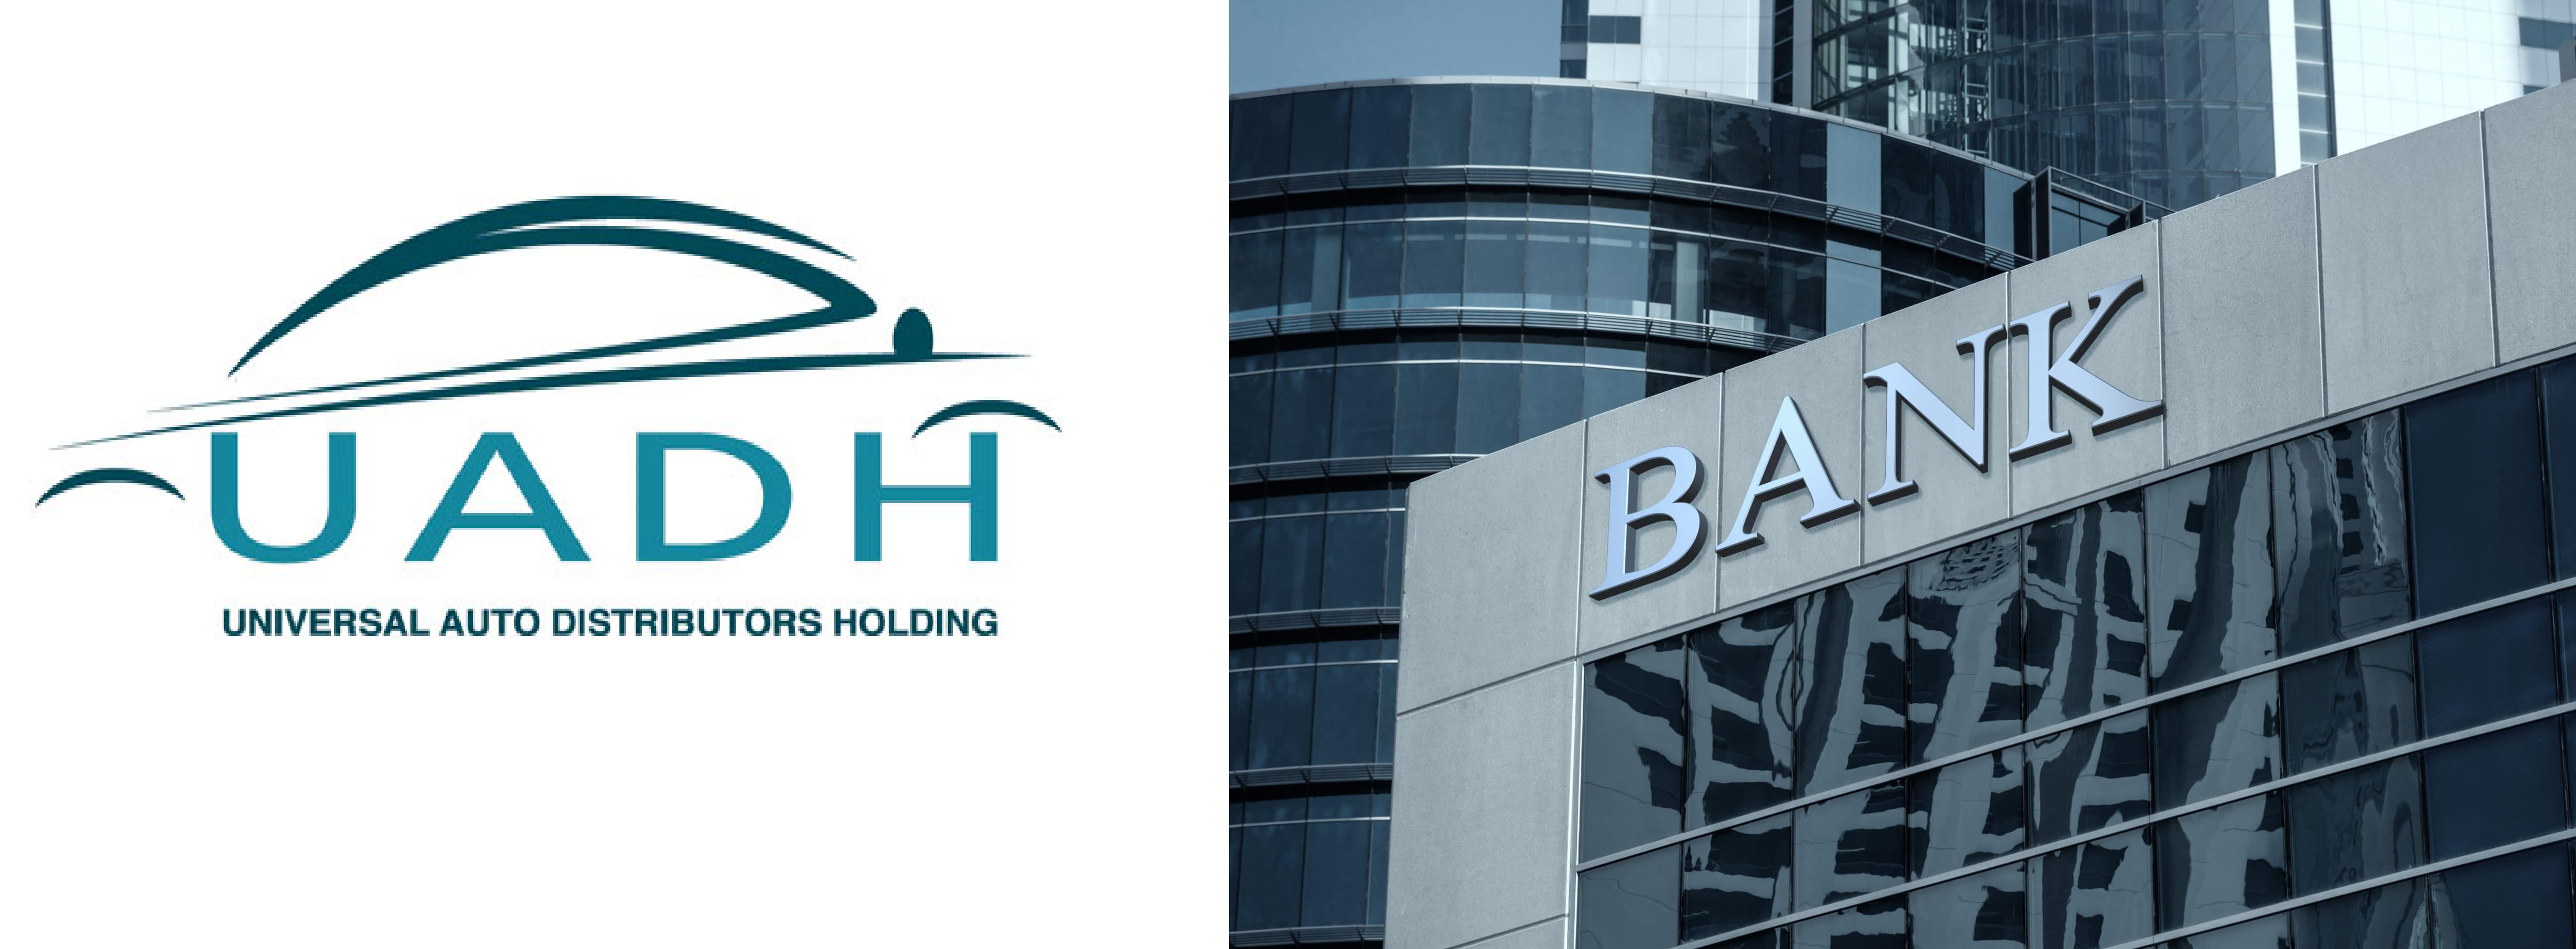 UADH : Blocage de crédits bancaires